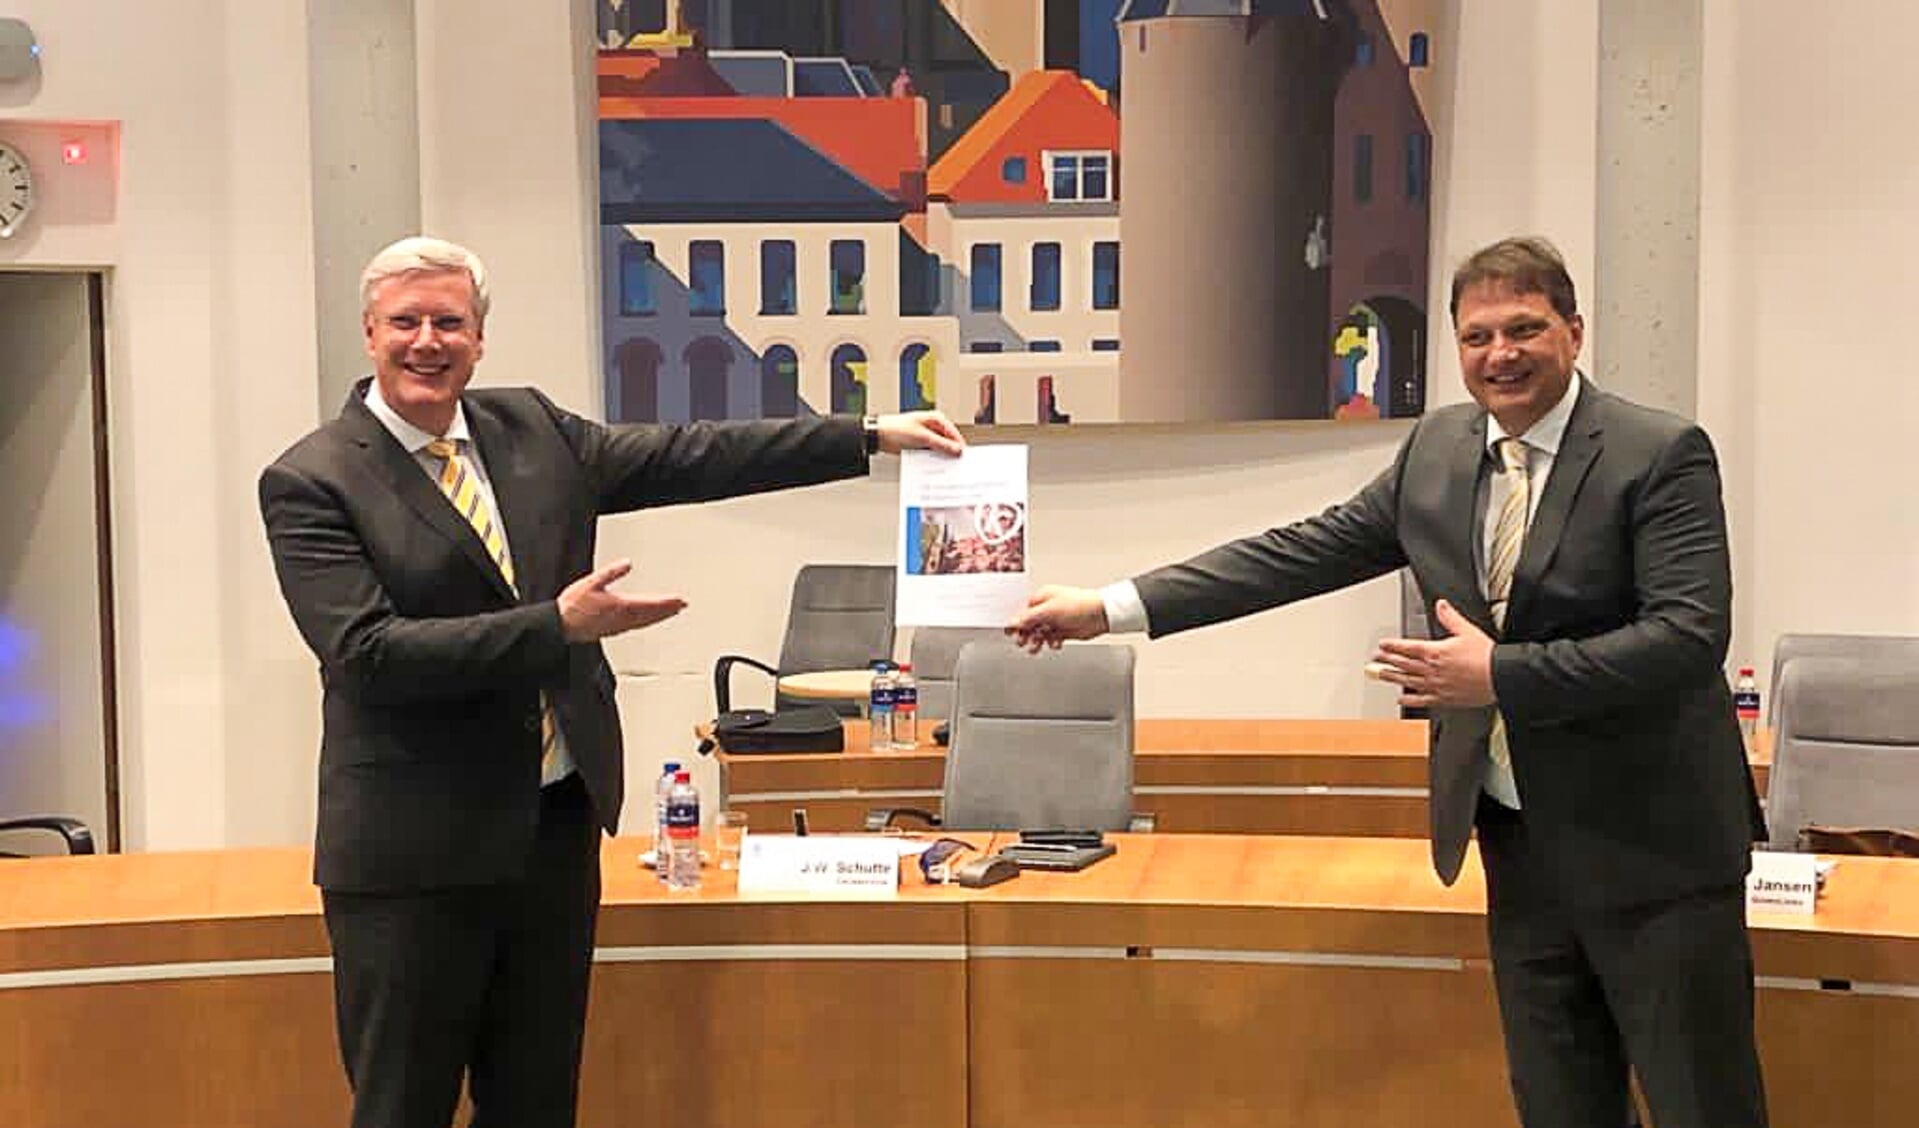 Commissaris van de Koning Andries Heidema ontving de profielschets voor de nieuwe burgemeester uit handen van de voorzitter van de vertrouwenscommissie Jan Willem Schutte (ChristenUnie). 